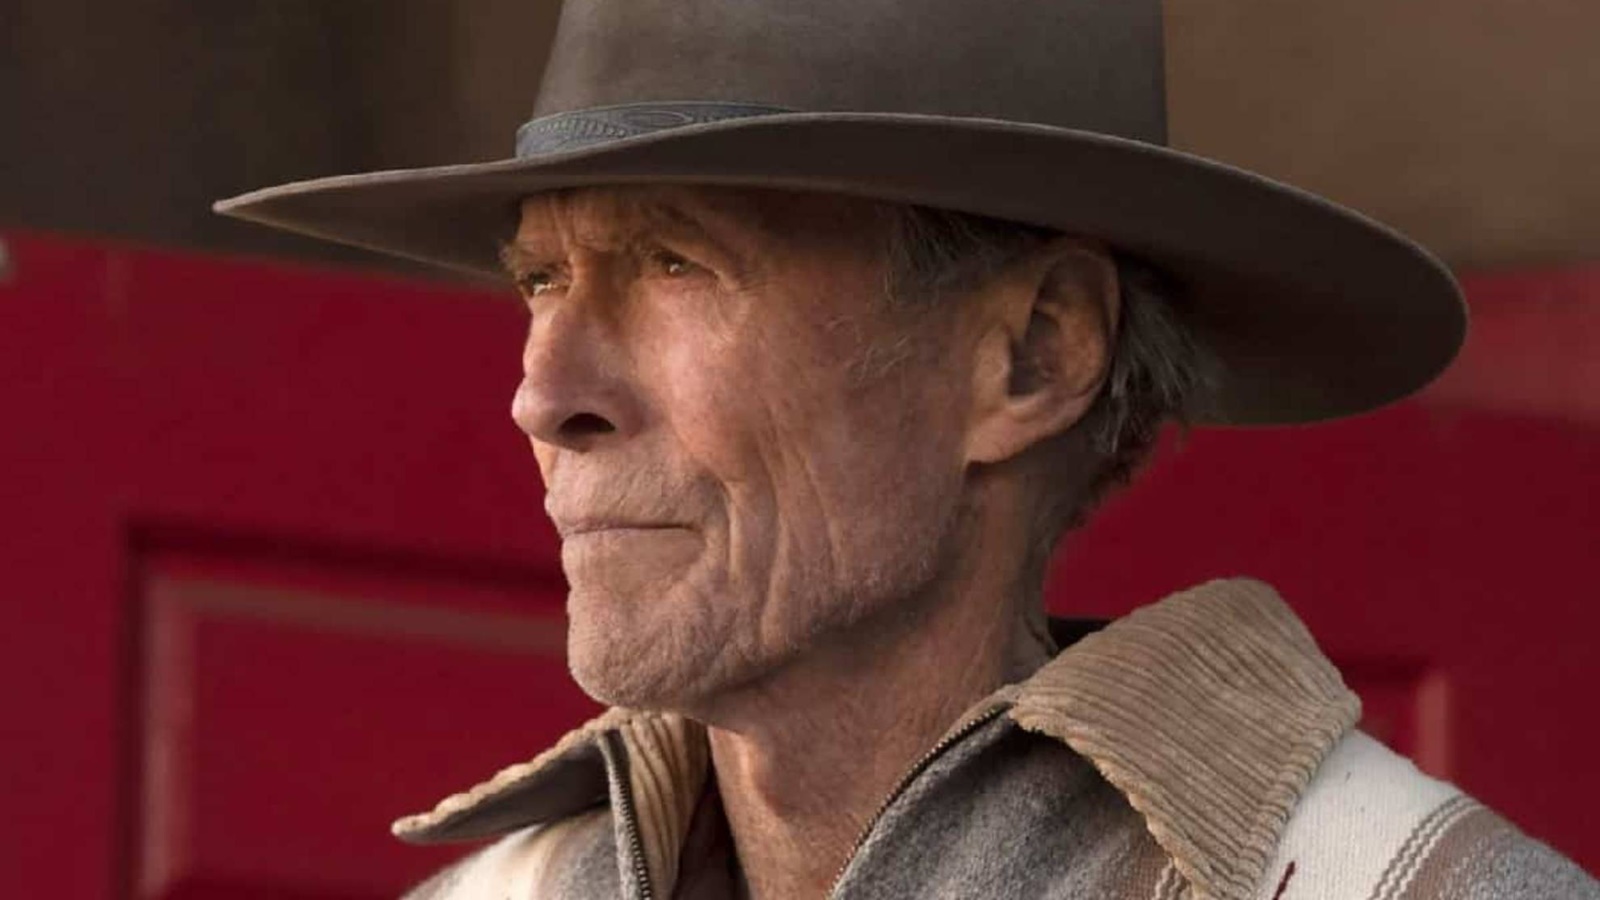 Clint Eastwood: le foto dal set confermano l'inizio delle riprese del film Juror #2